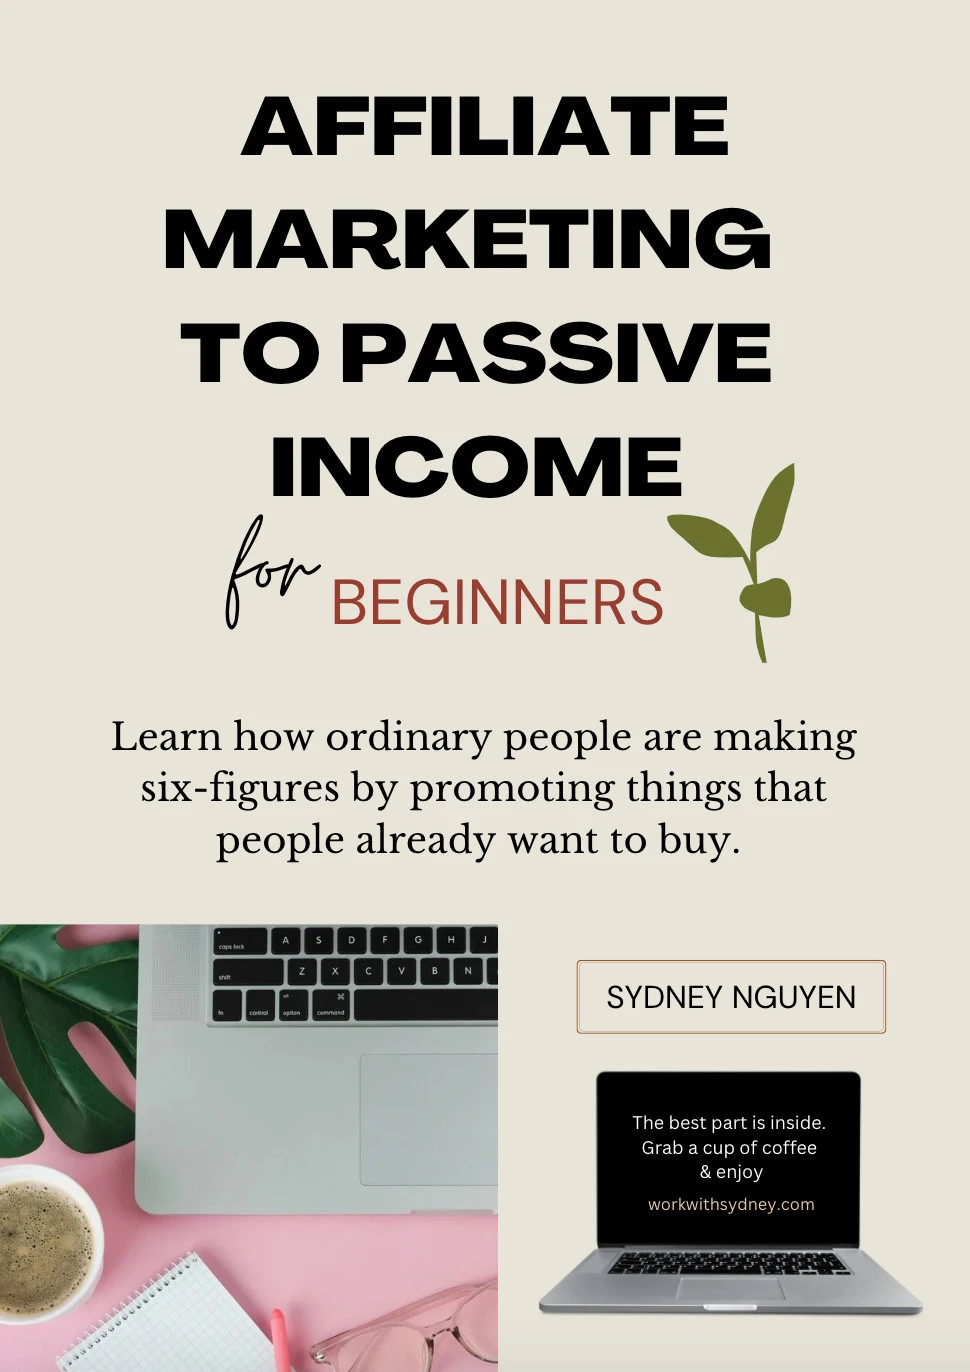 Affiliate Marketing Guide to Passive Income